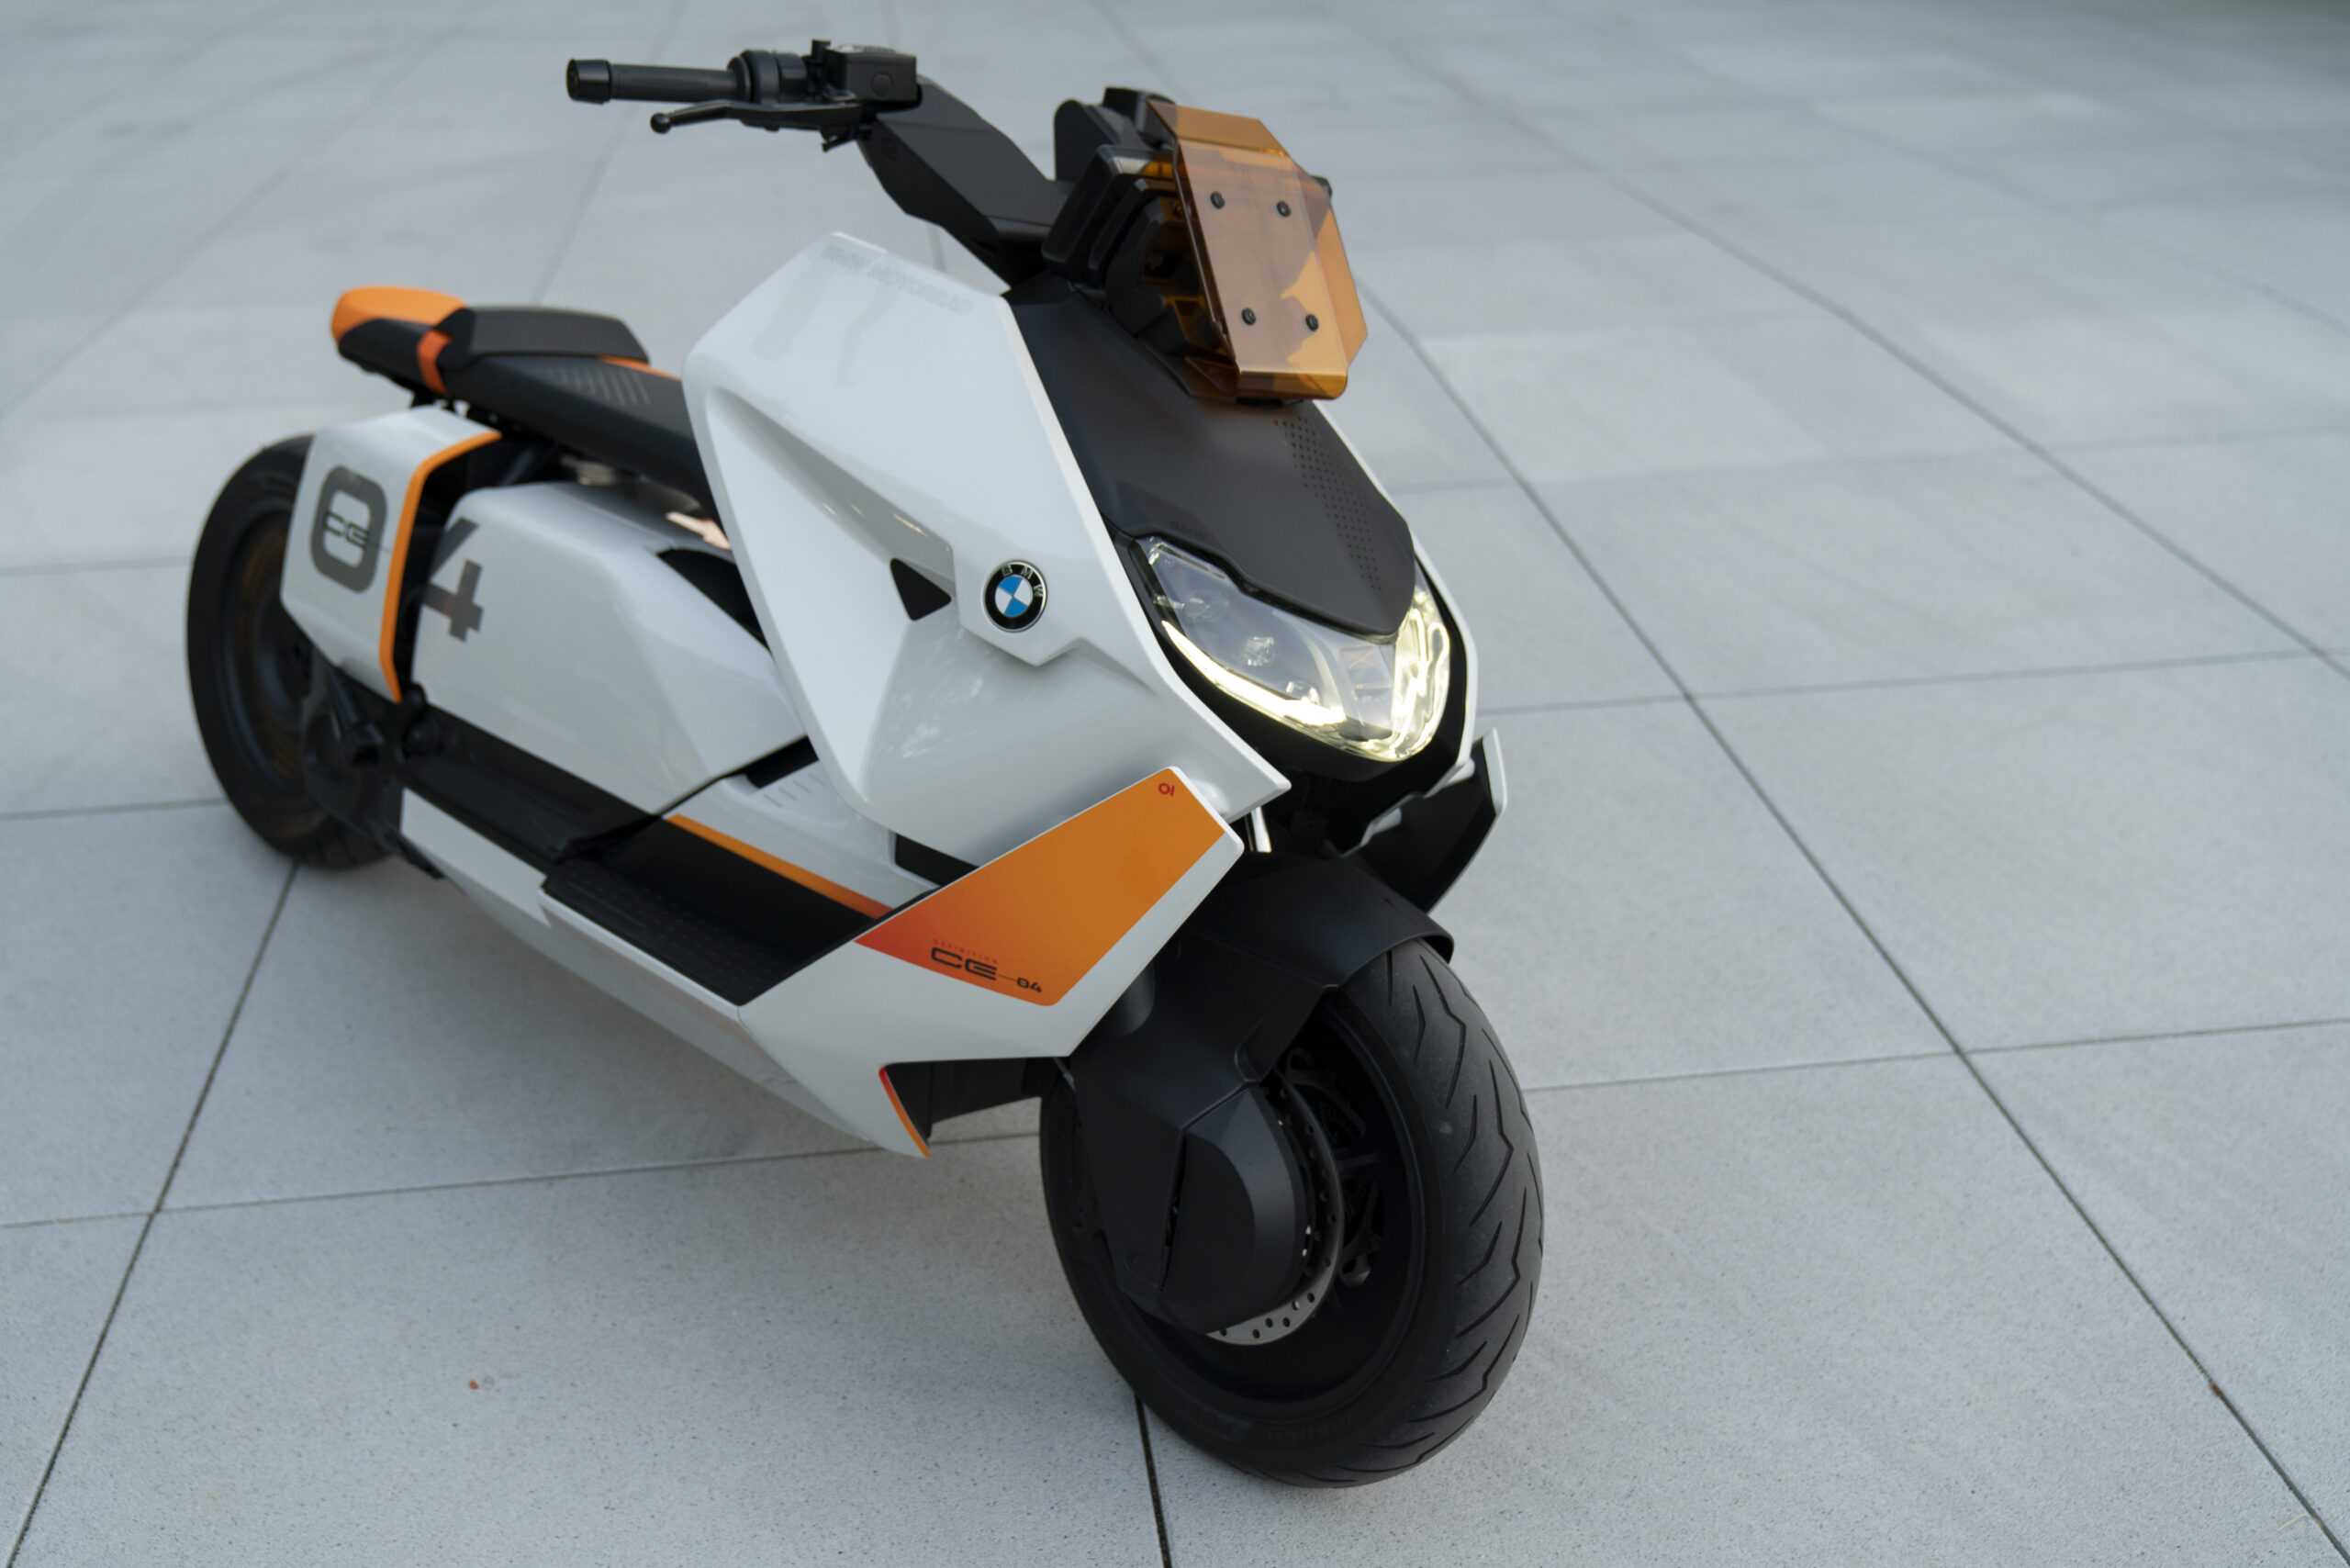 Elektriska BMW Motorrad Definition CE 04 banar väg för framtidens urbana scootrar 2